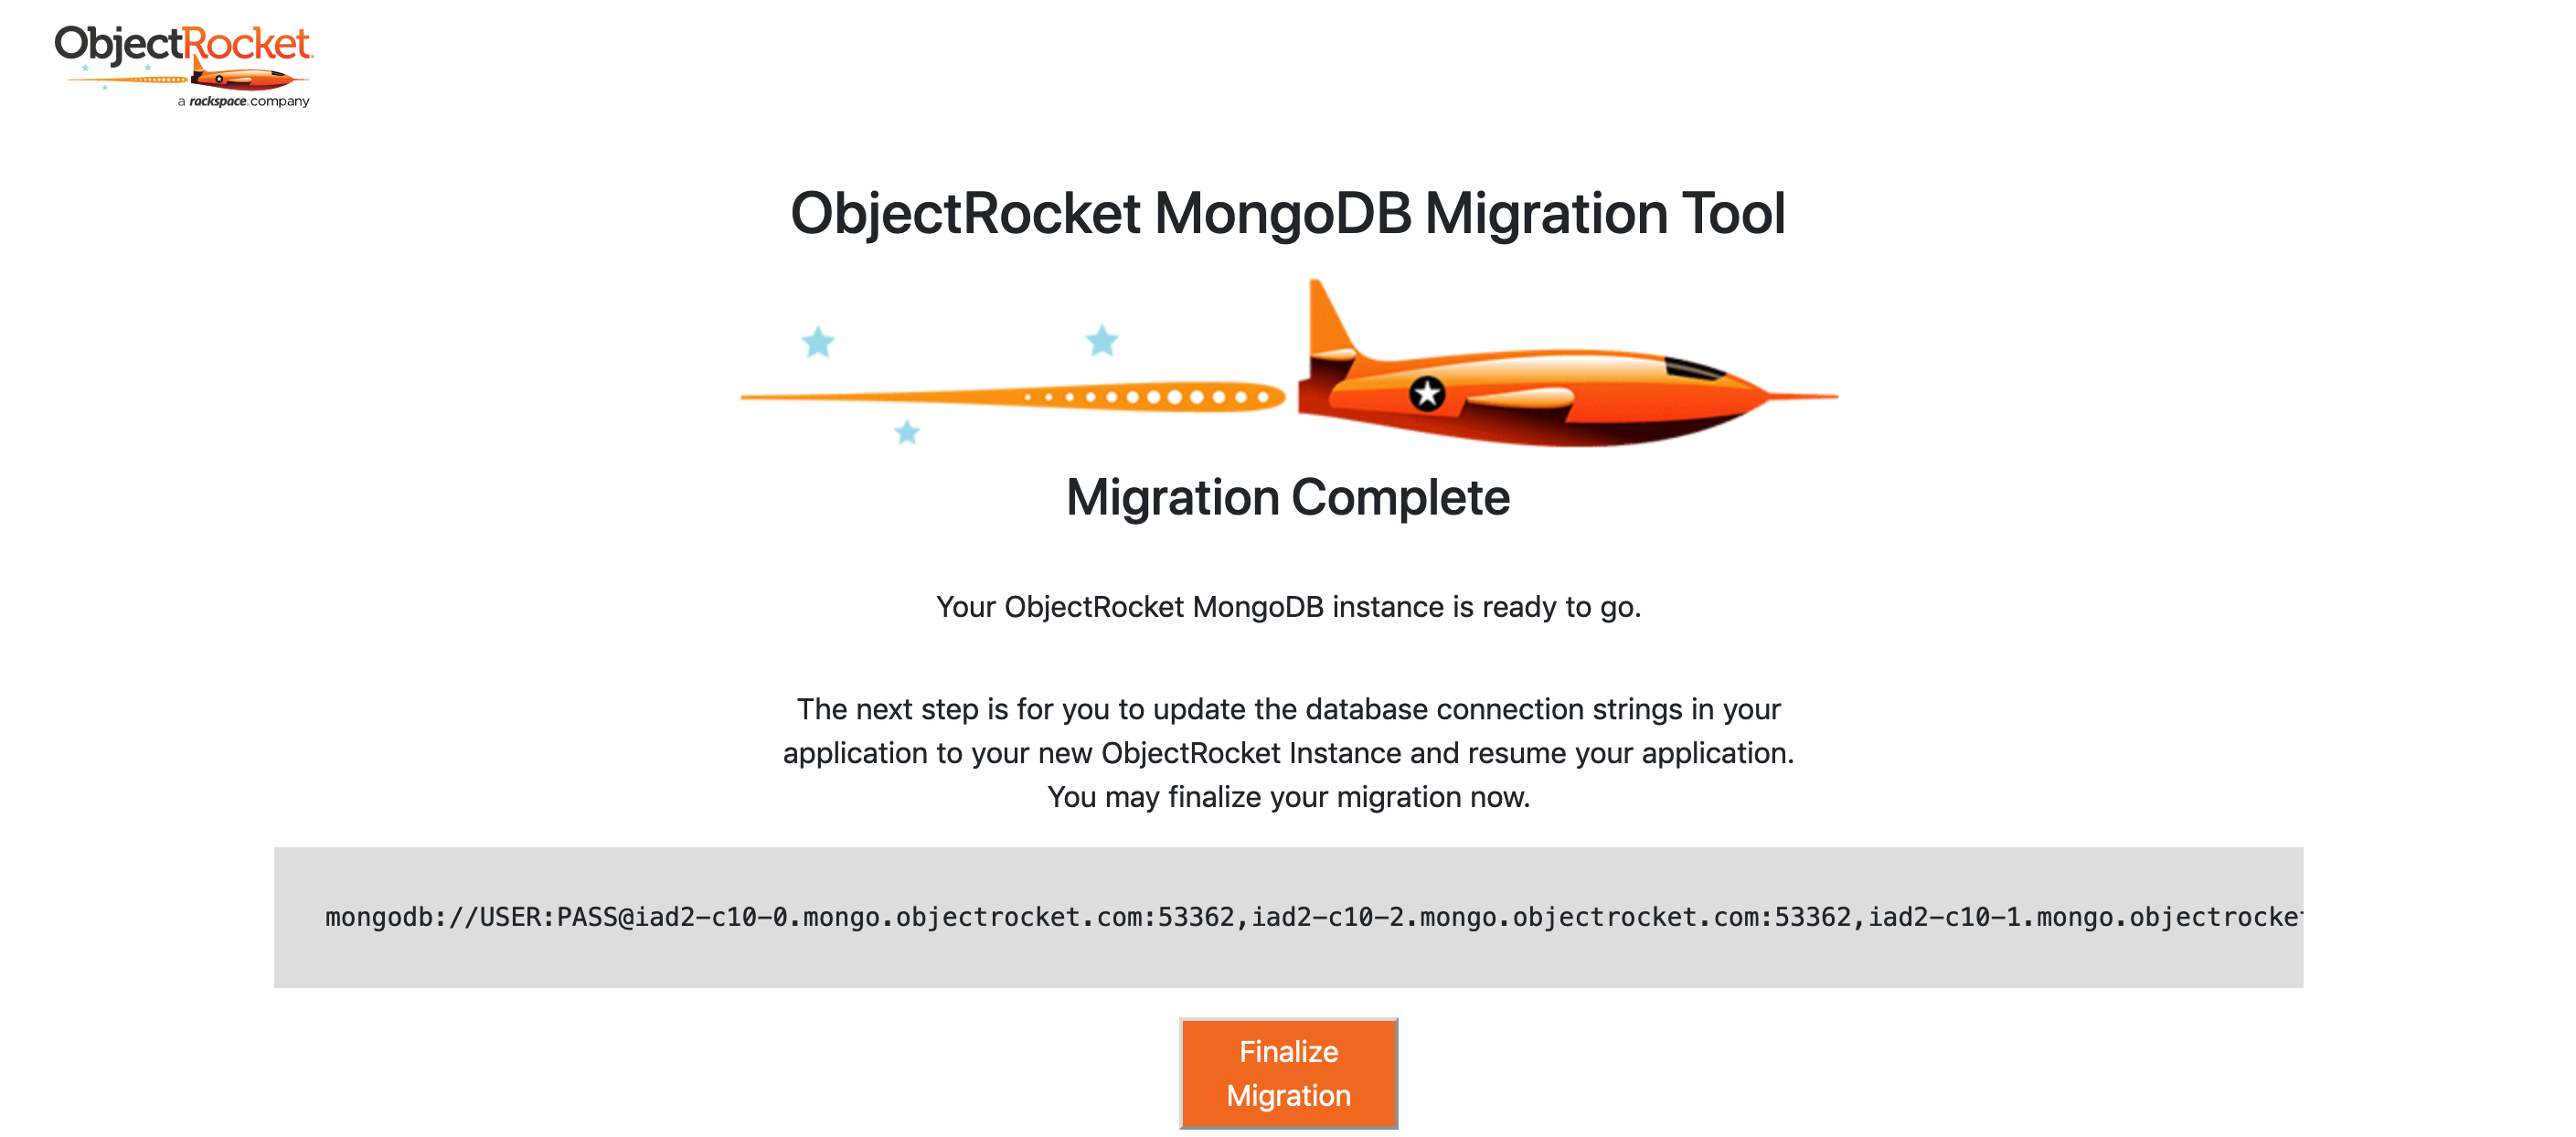 ObjectRocket Finalize MongoDB Migration page.